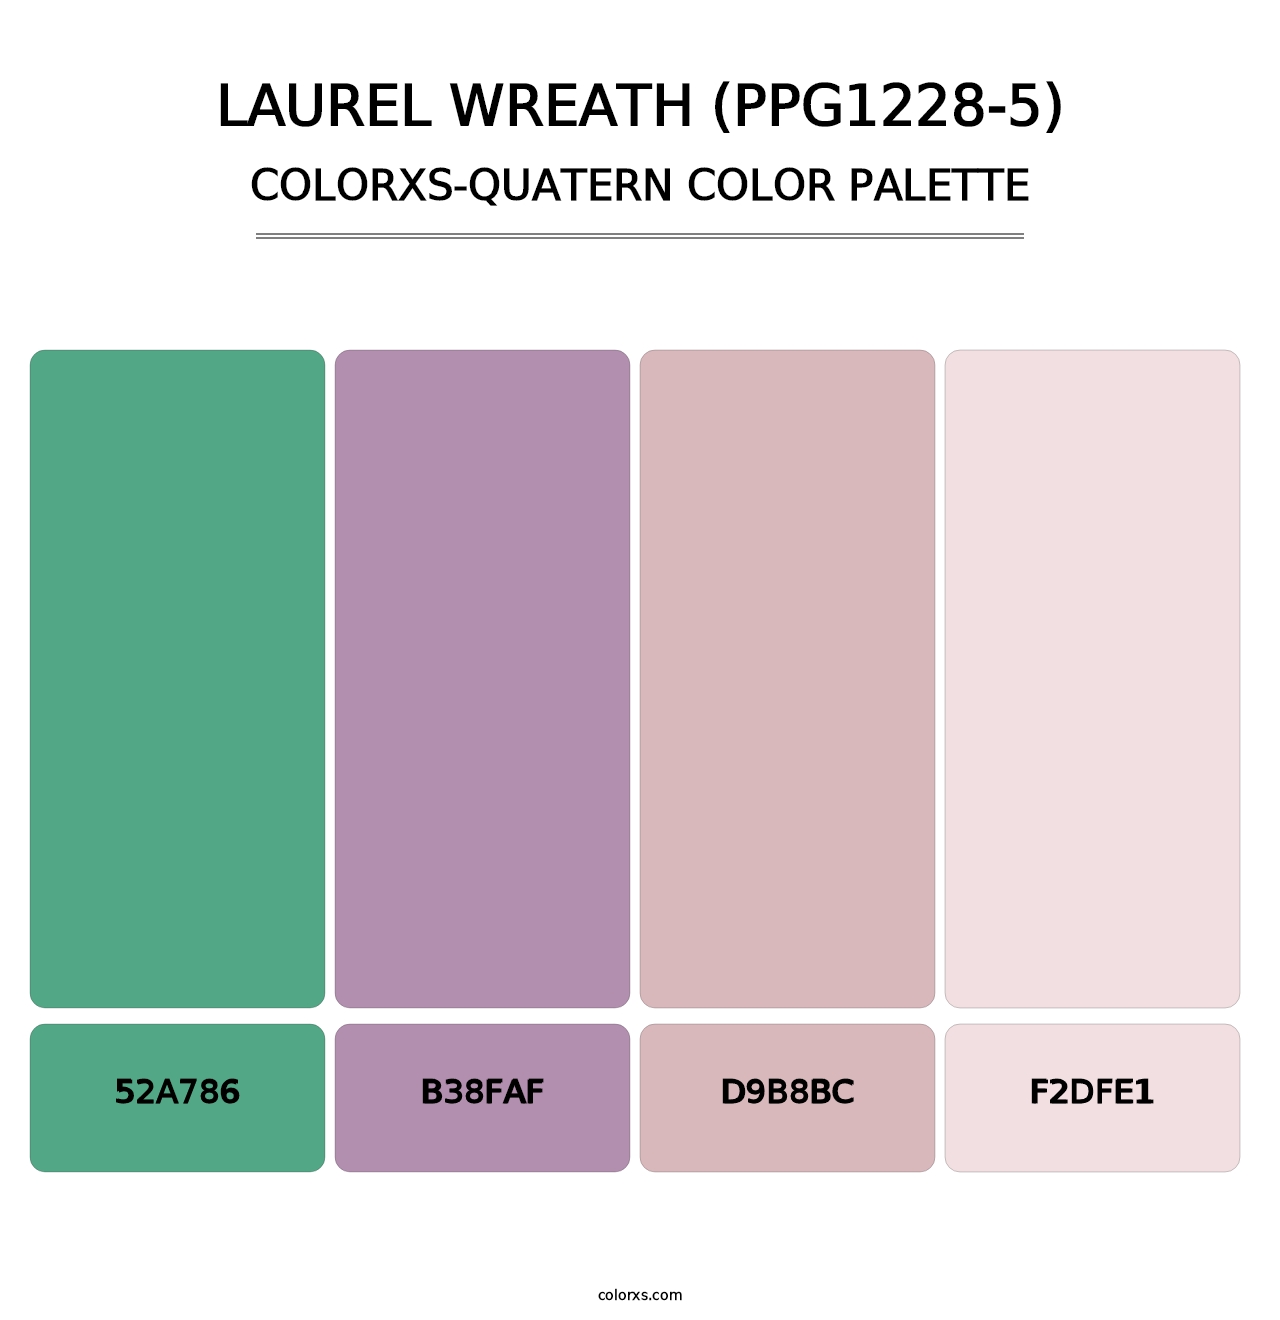 Laurel Wreath (PPG1228-5) - Colorxs Quatern Palette